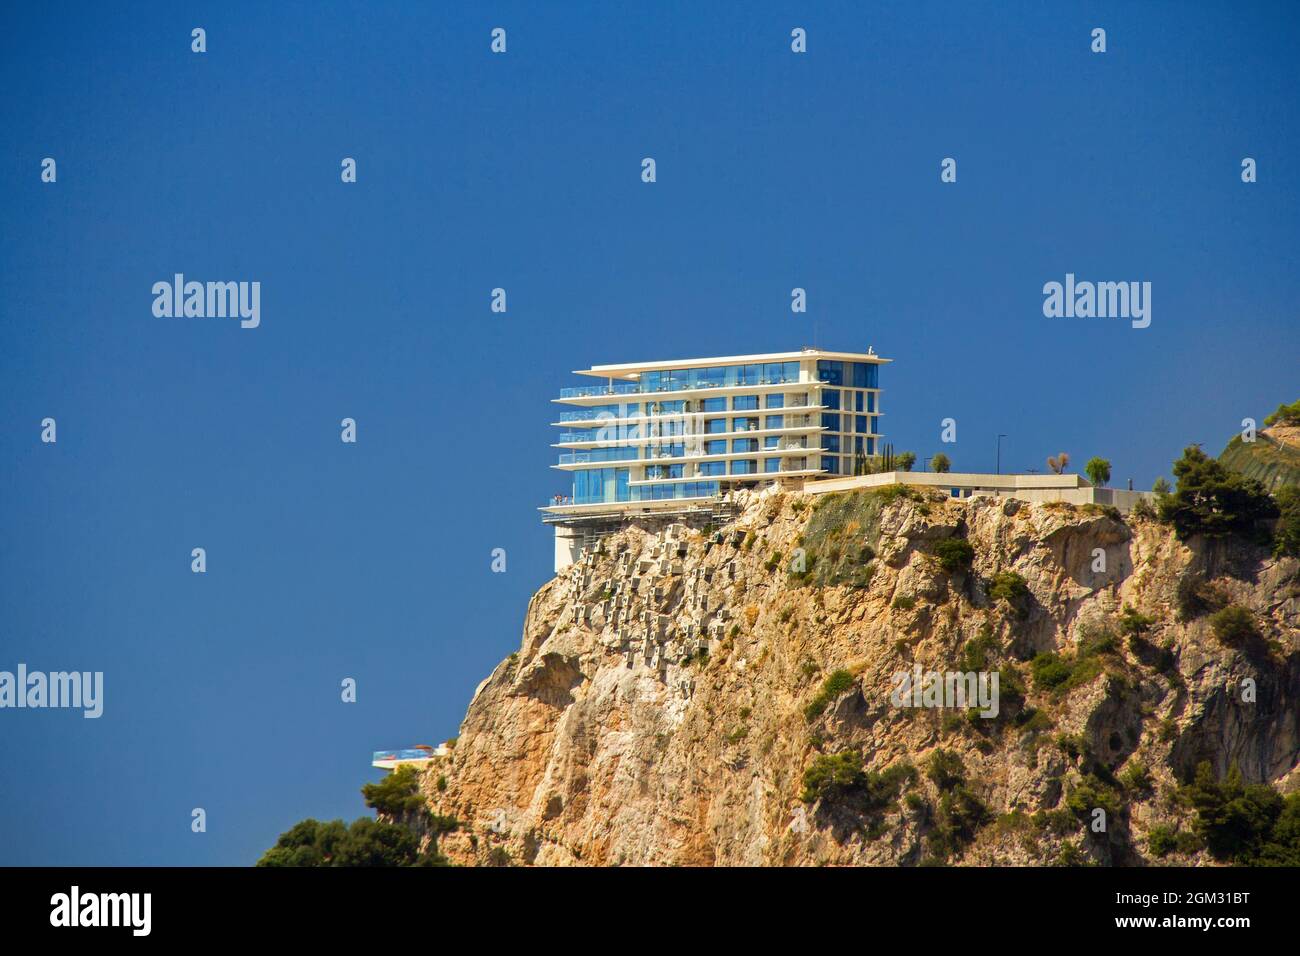 Le Maybourne Riviera, le nouvel hôtel de luxe sur le promontoire de Monaco, Roquebrune-Cap-Martin, France, Côte d'azur Banque D'Images